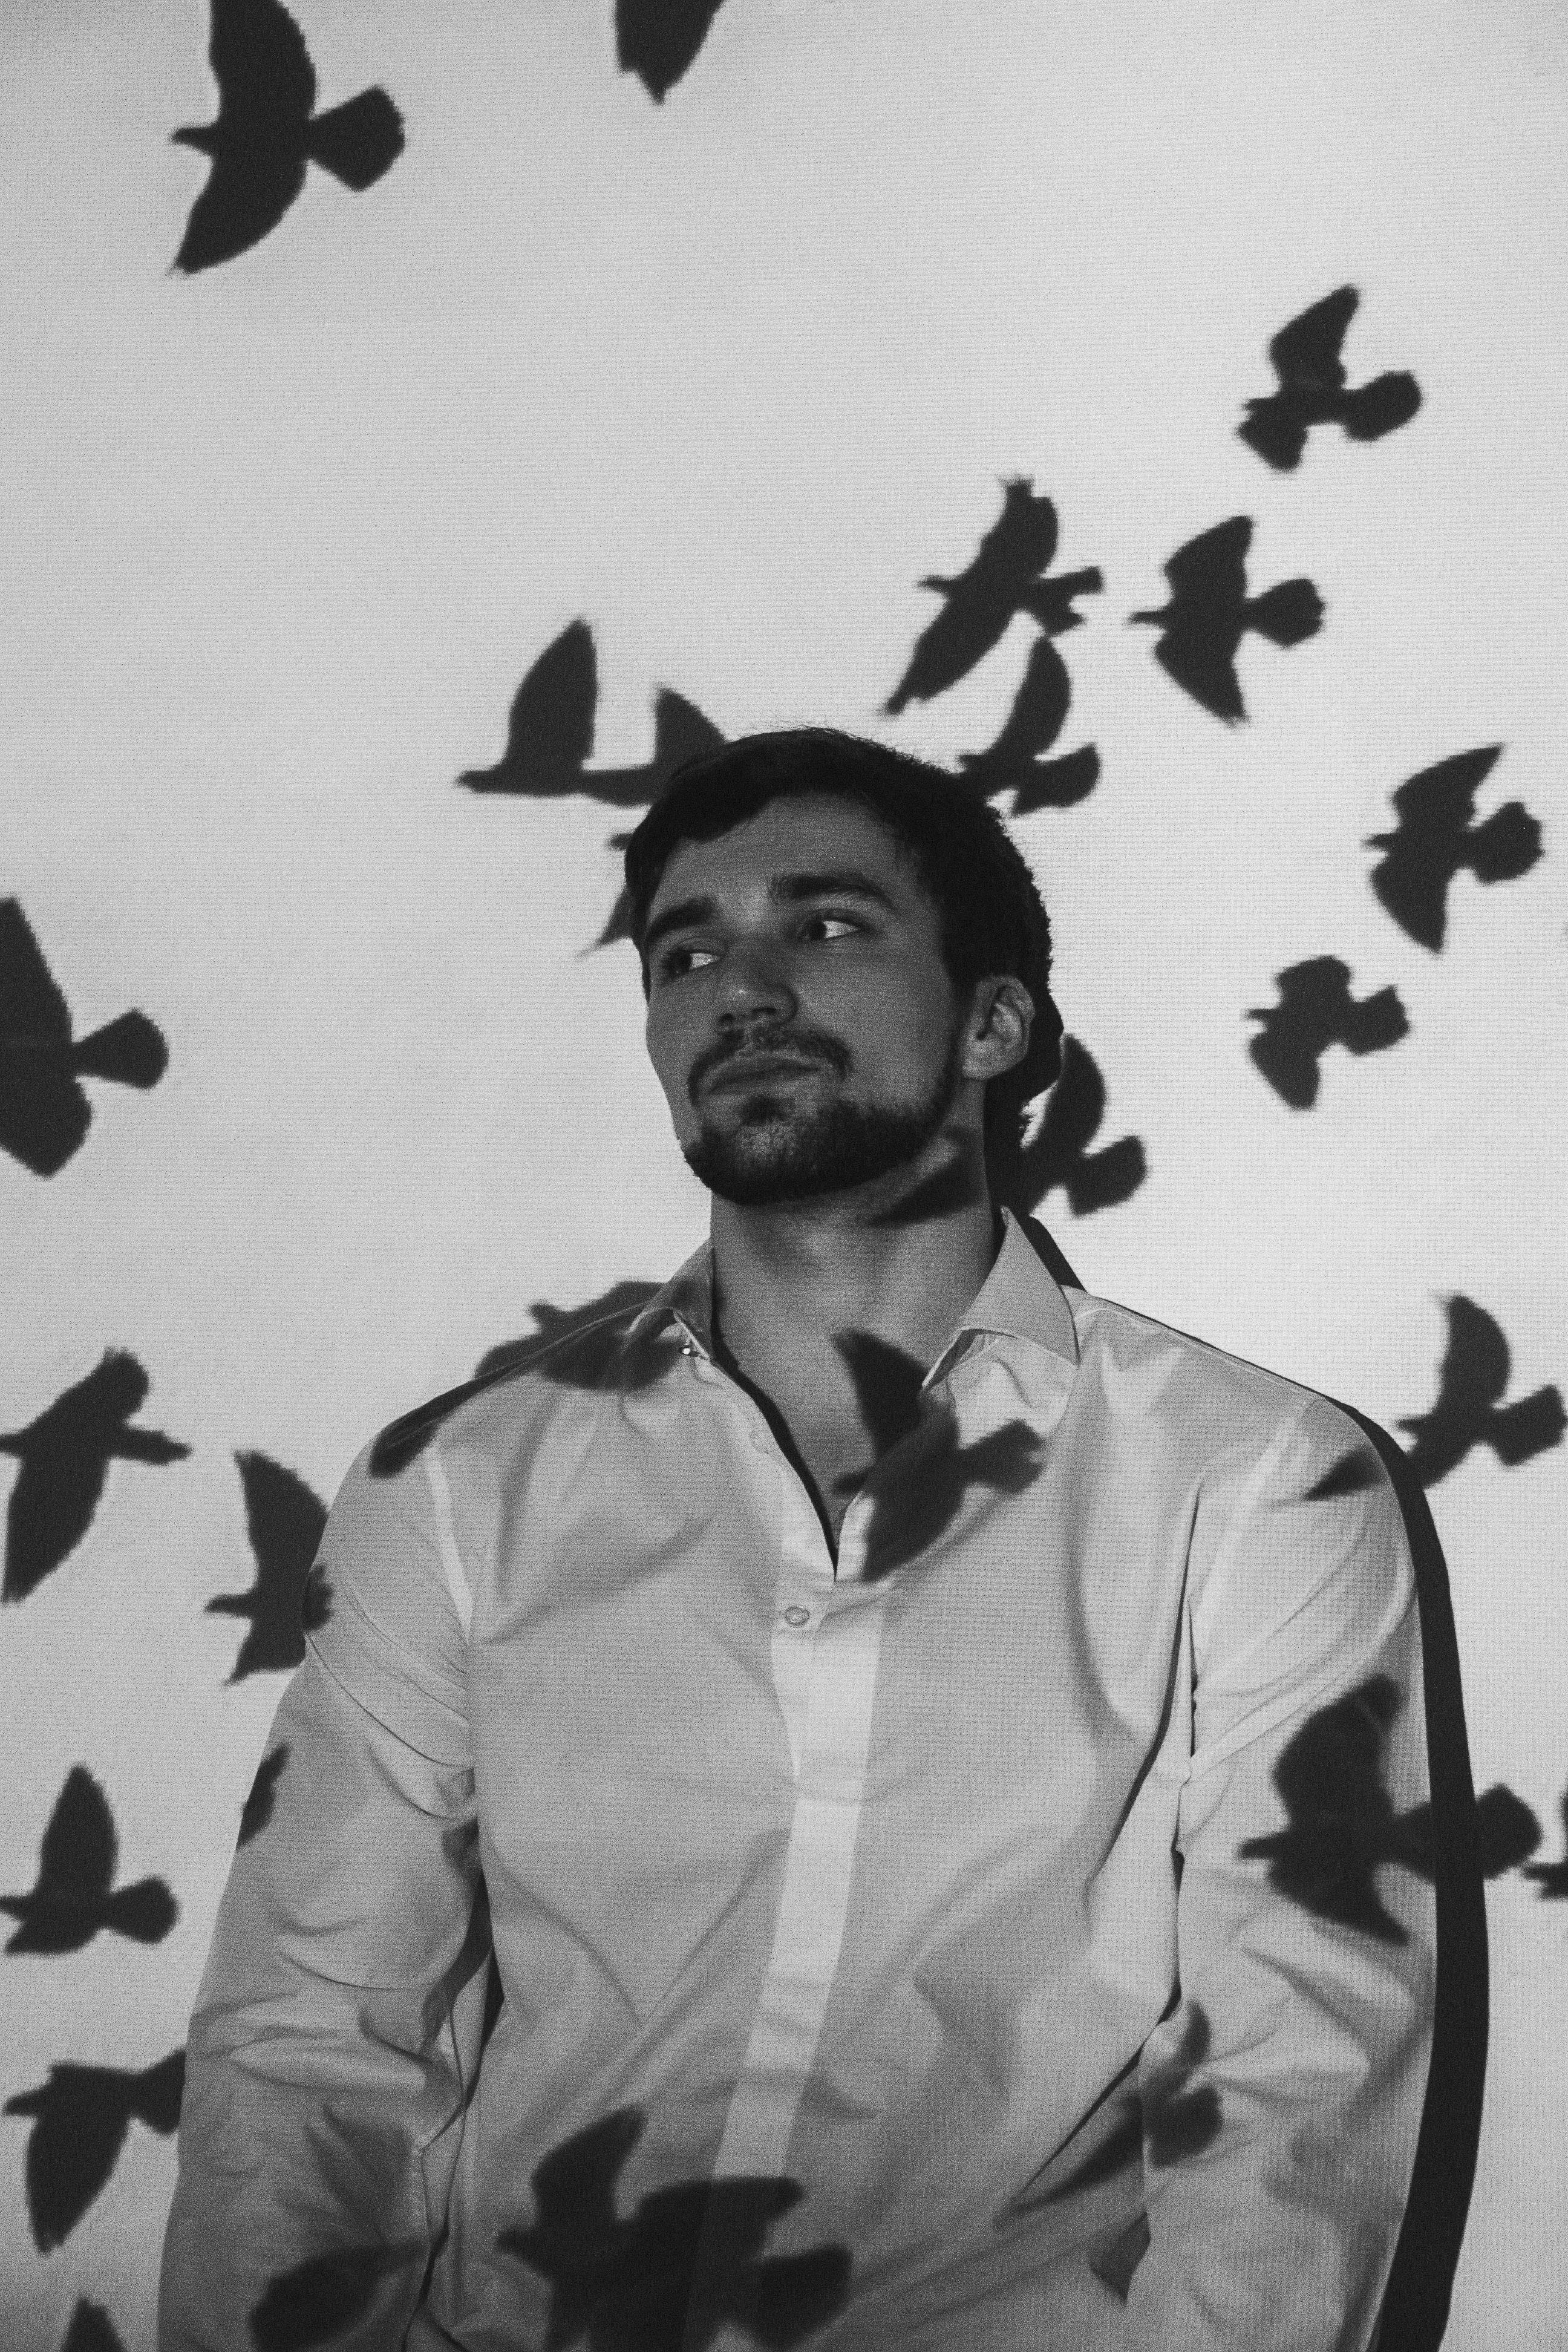 Hombre pensativo cerca de la pared con sombras de pájaros | Foto: Pexels